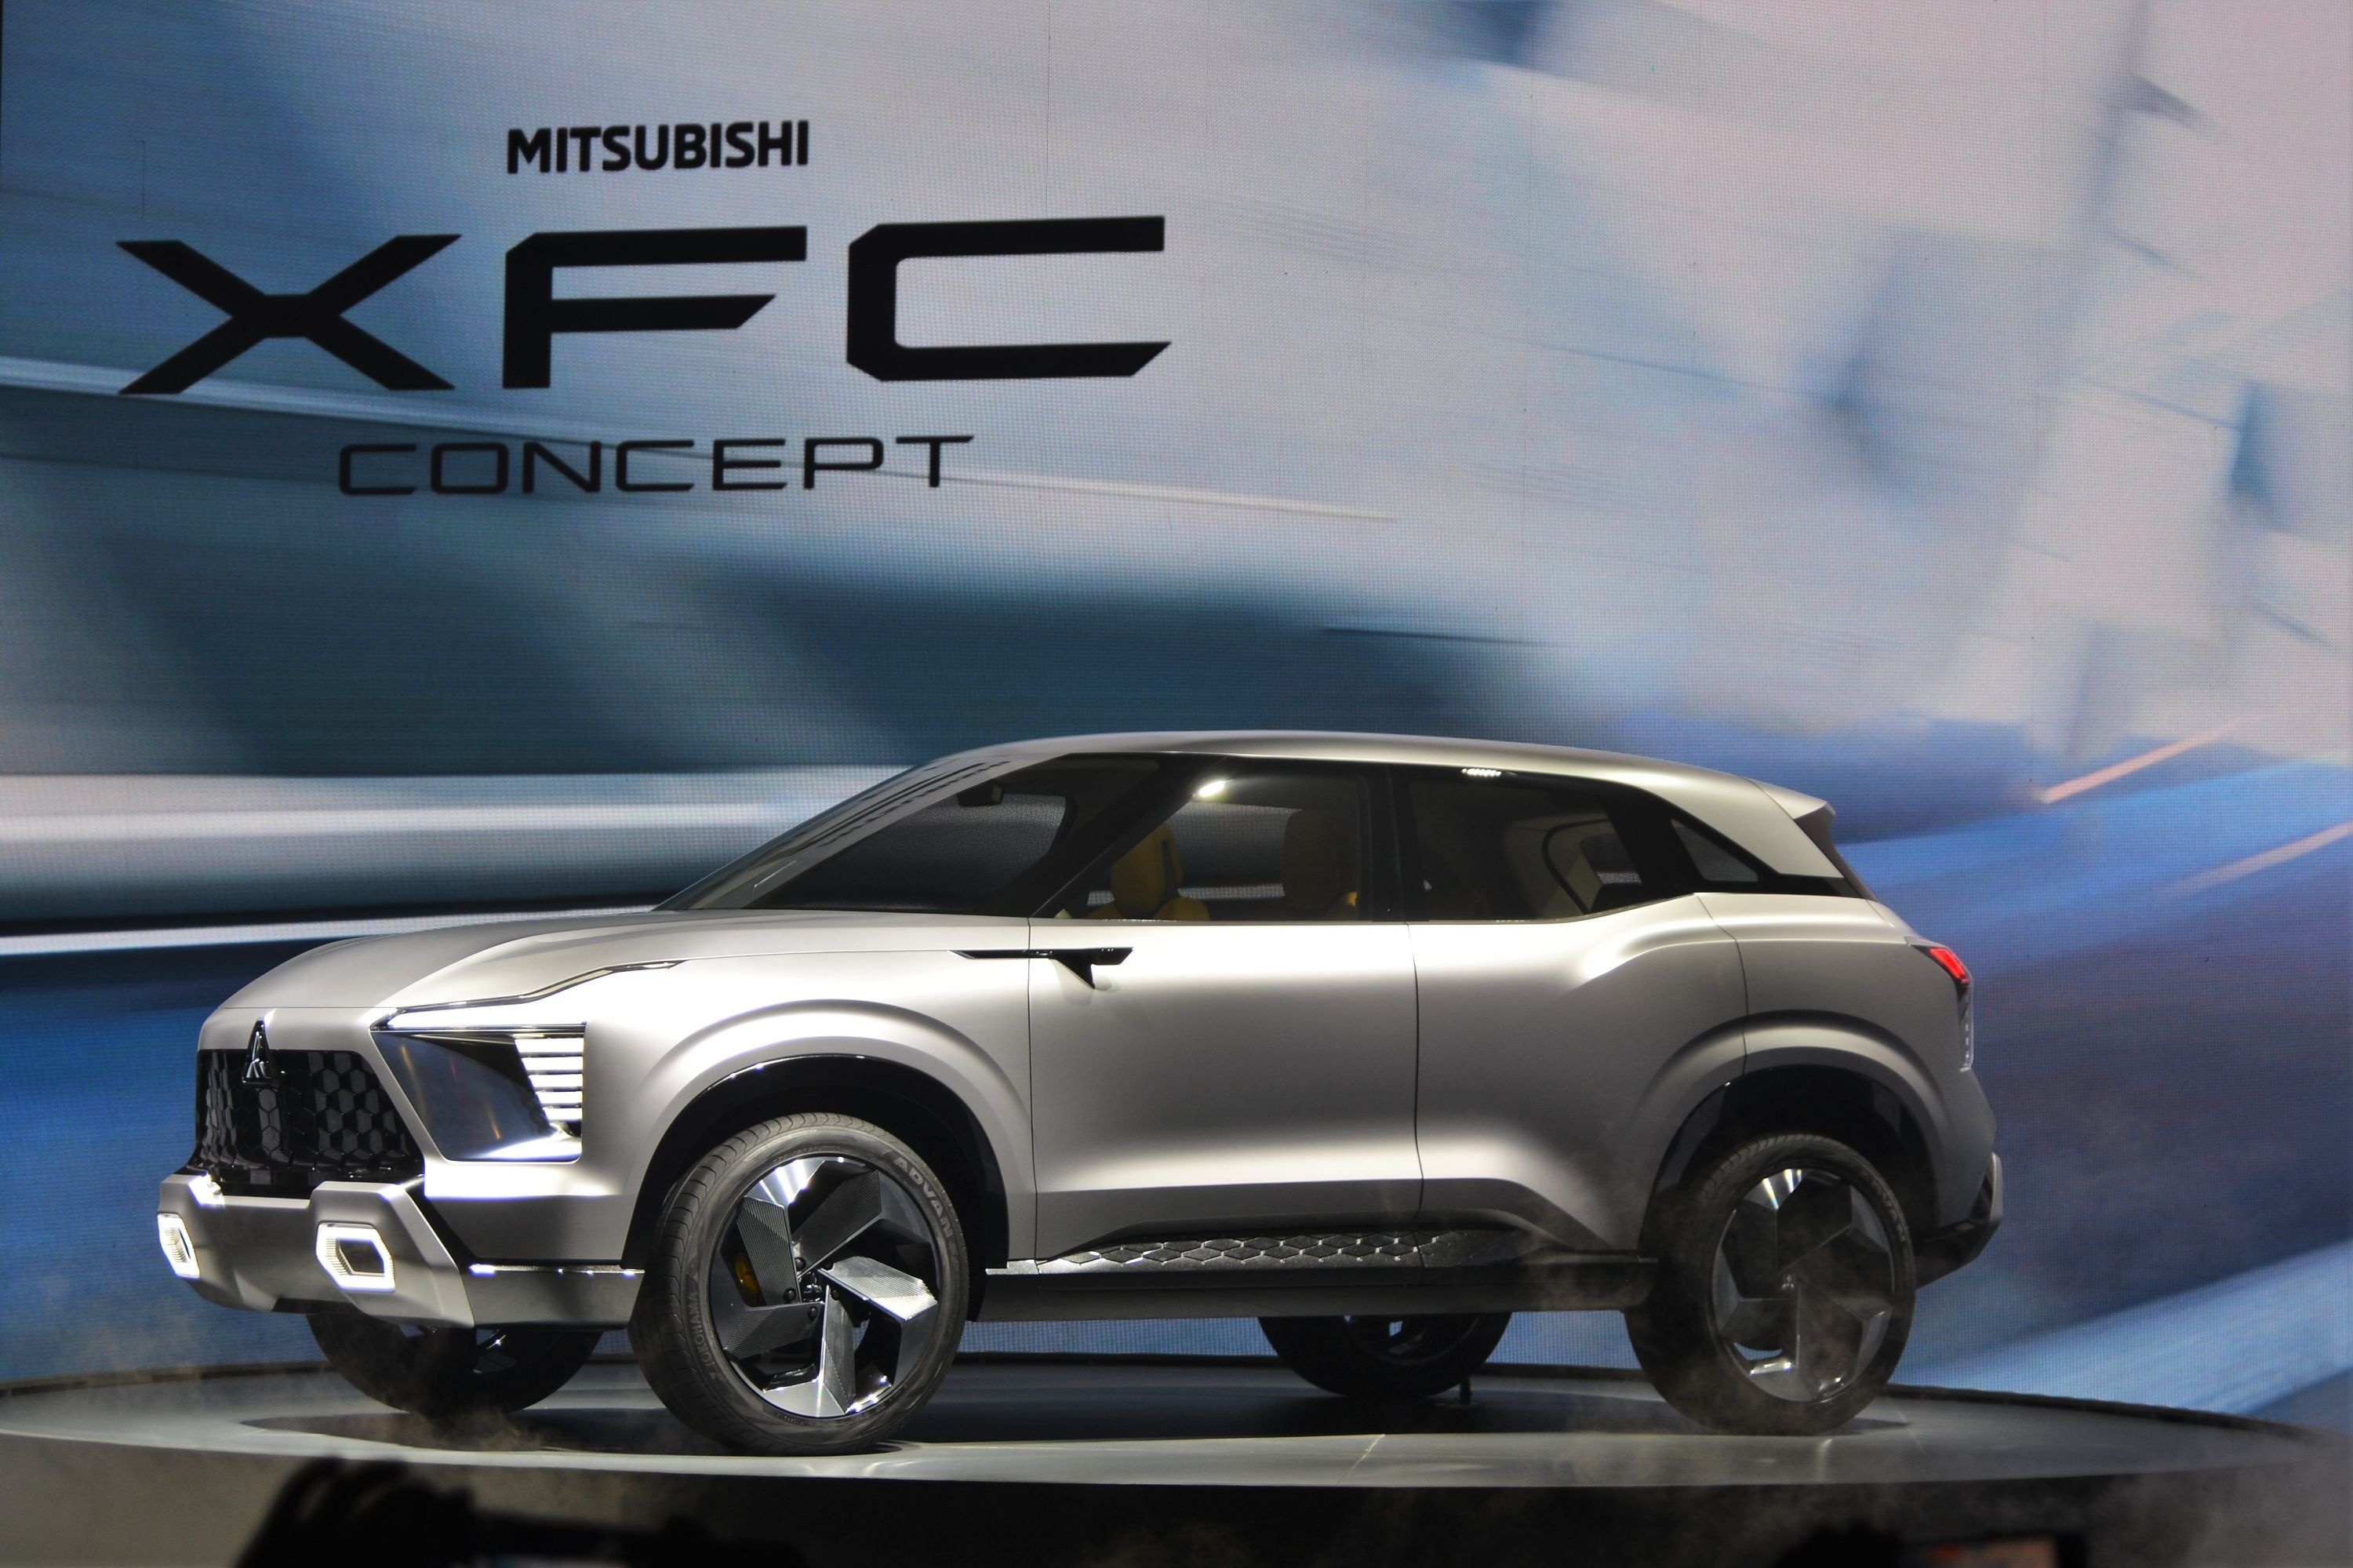 Mitsubishi XFC chốt lịch ra mắt Đông Nam Á vào tháng 8 - ảnh 1